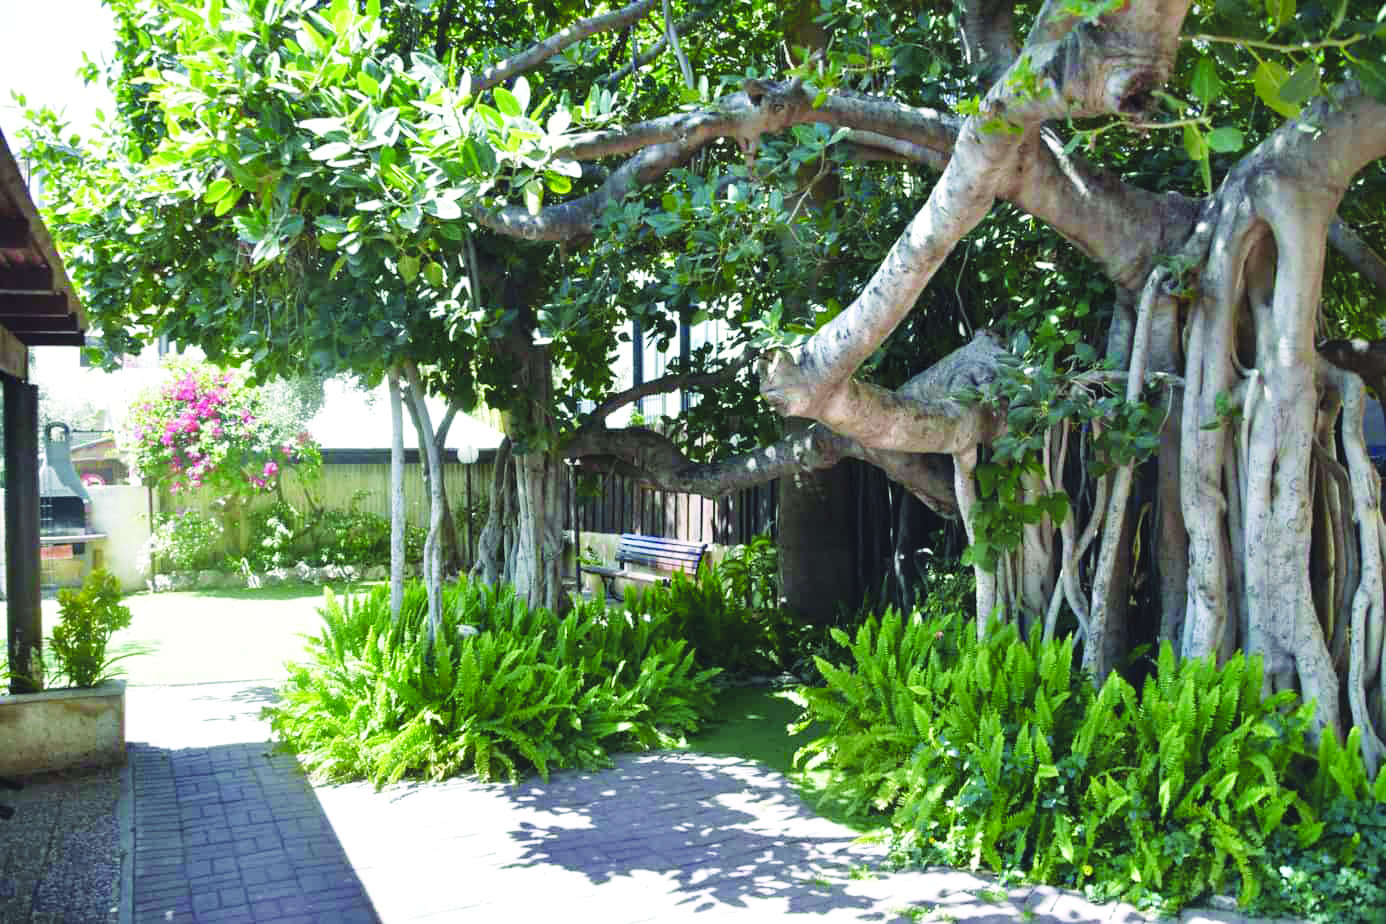 עץ הבאובב שבגן בית עמנואל צילום דני בר